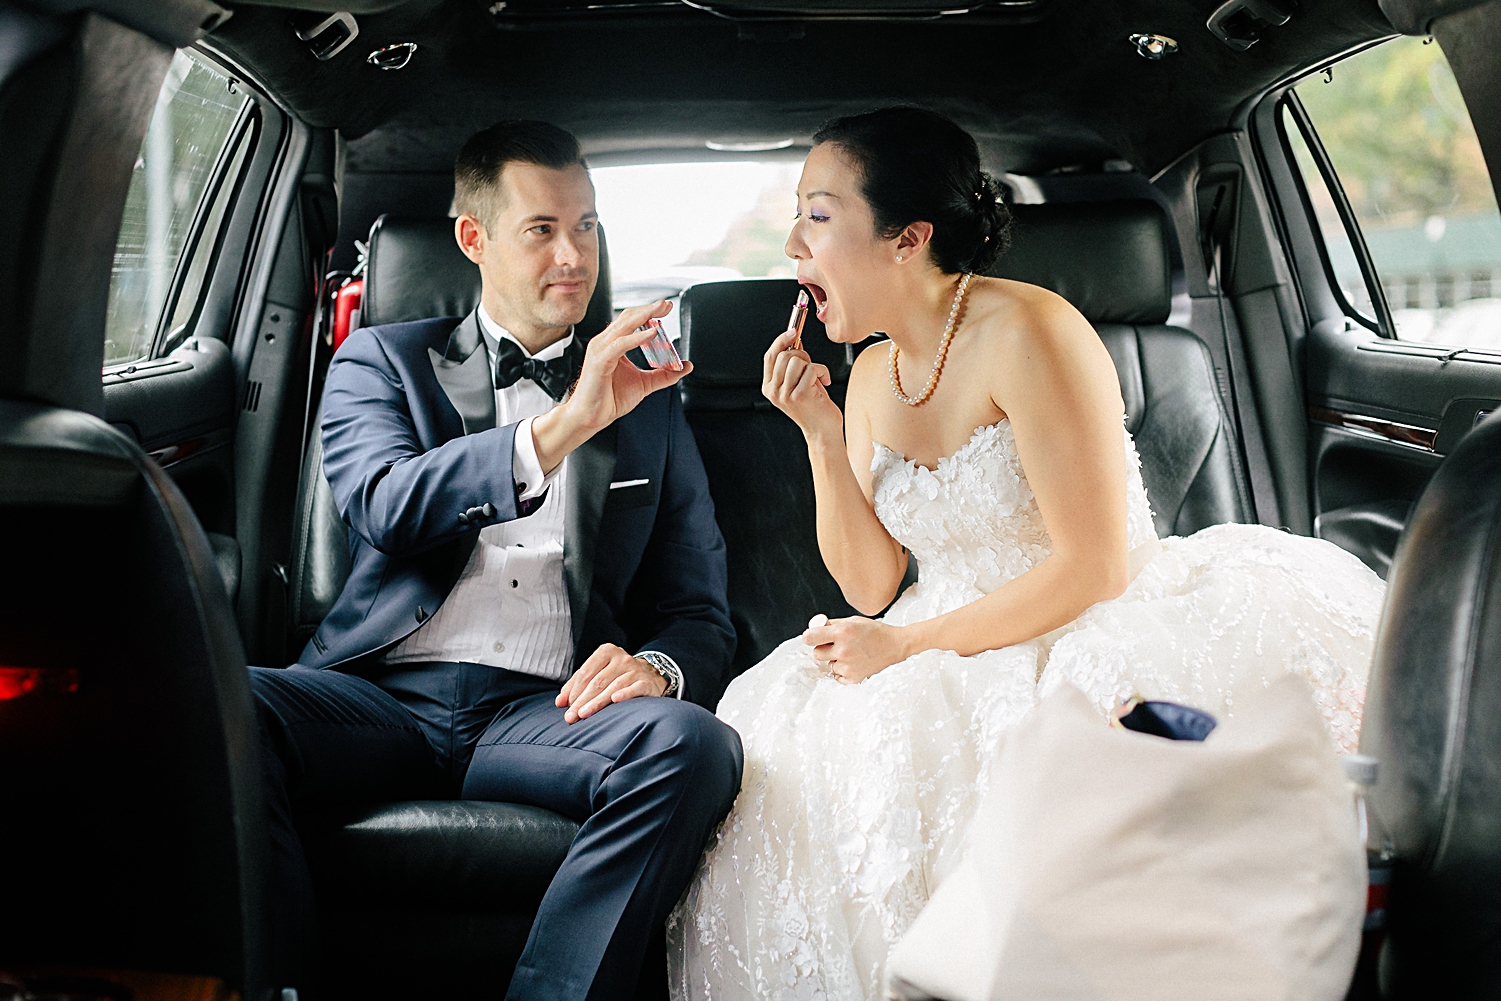 bride wear under wedding dress putting on lipstick next to groom